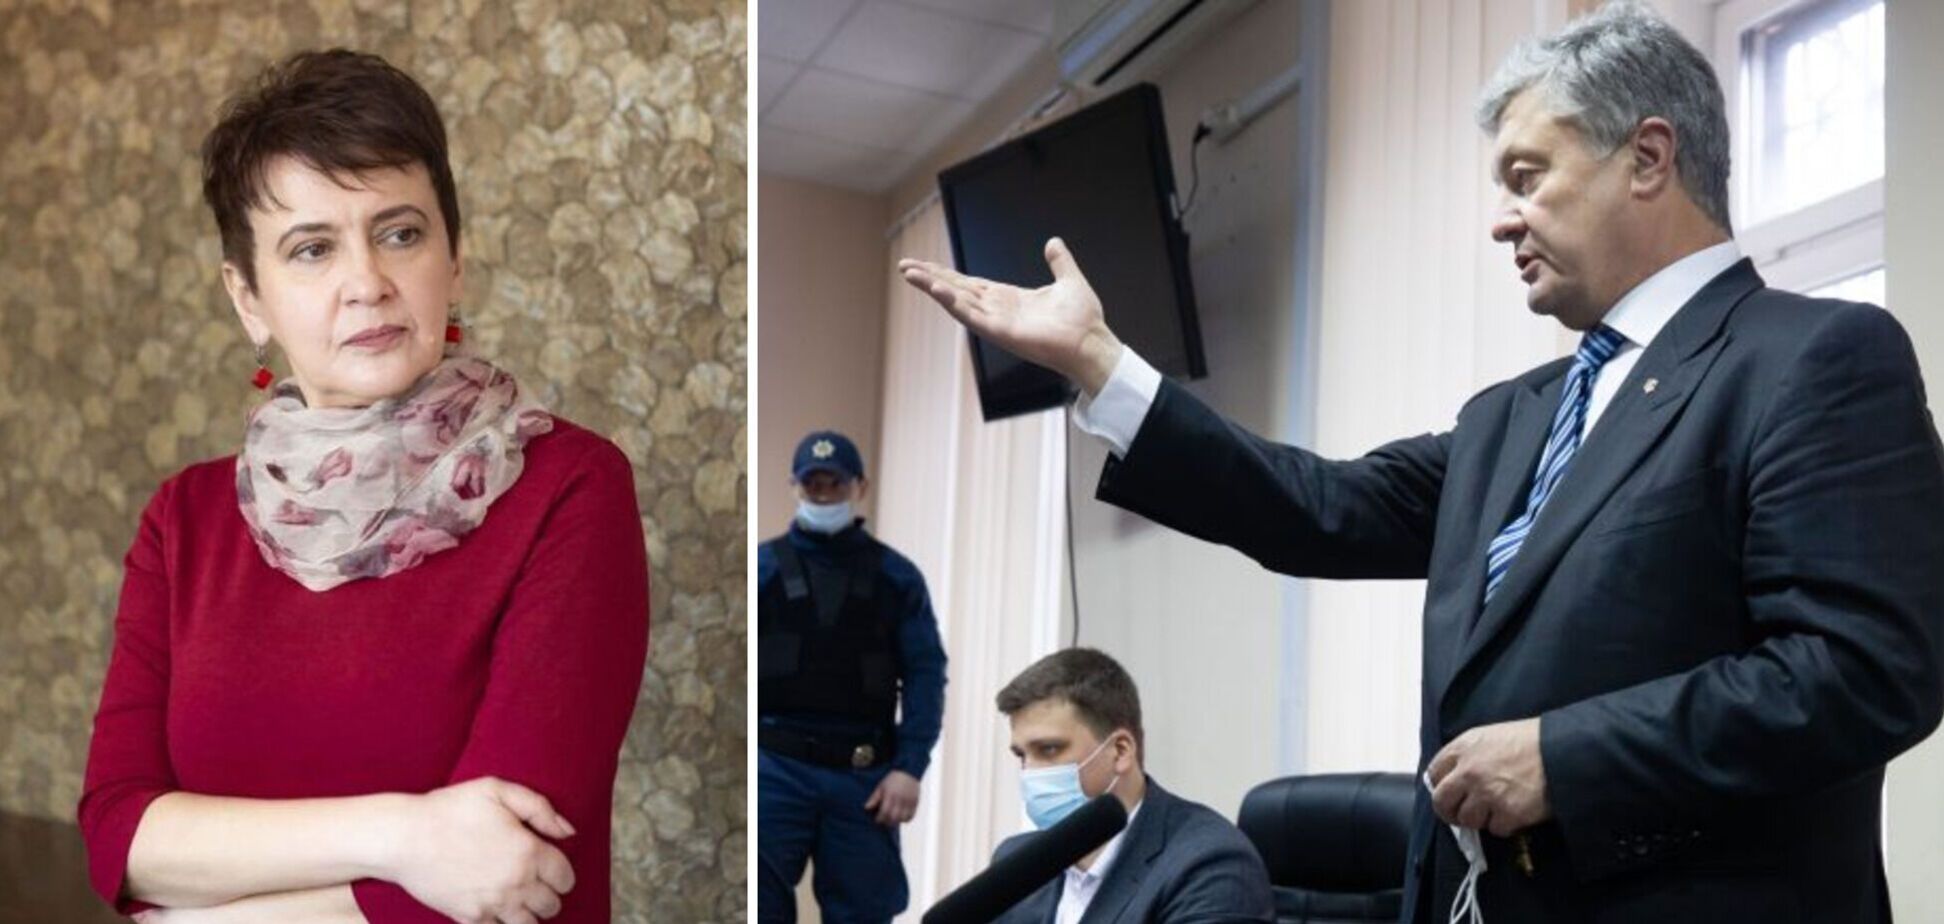 Забужко о суде над Порошенко: это копипаст московского сценария с Навальным